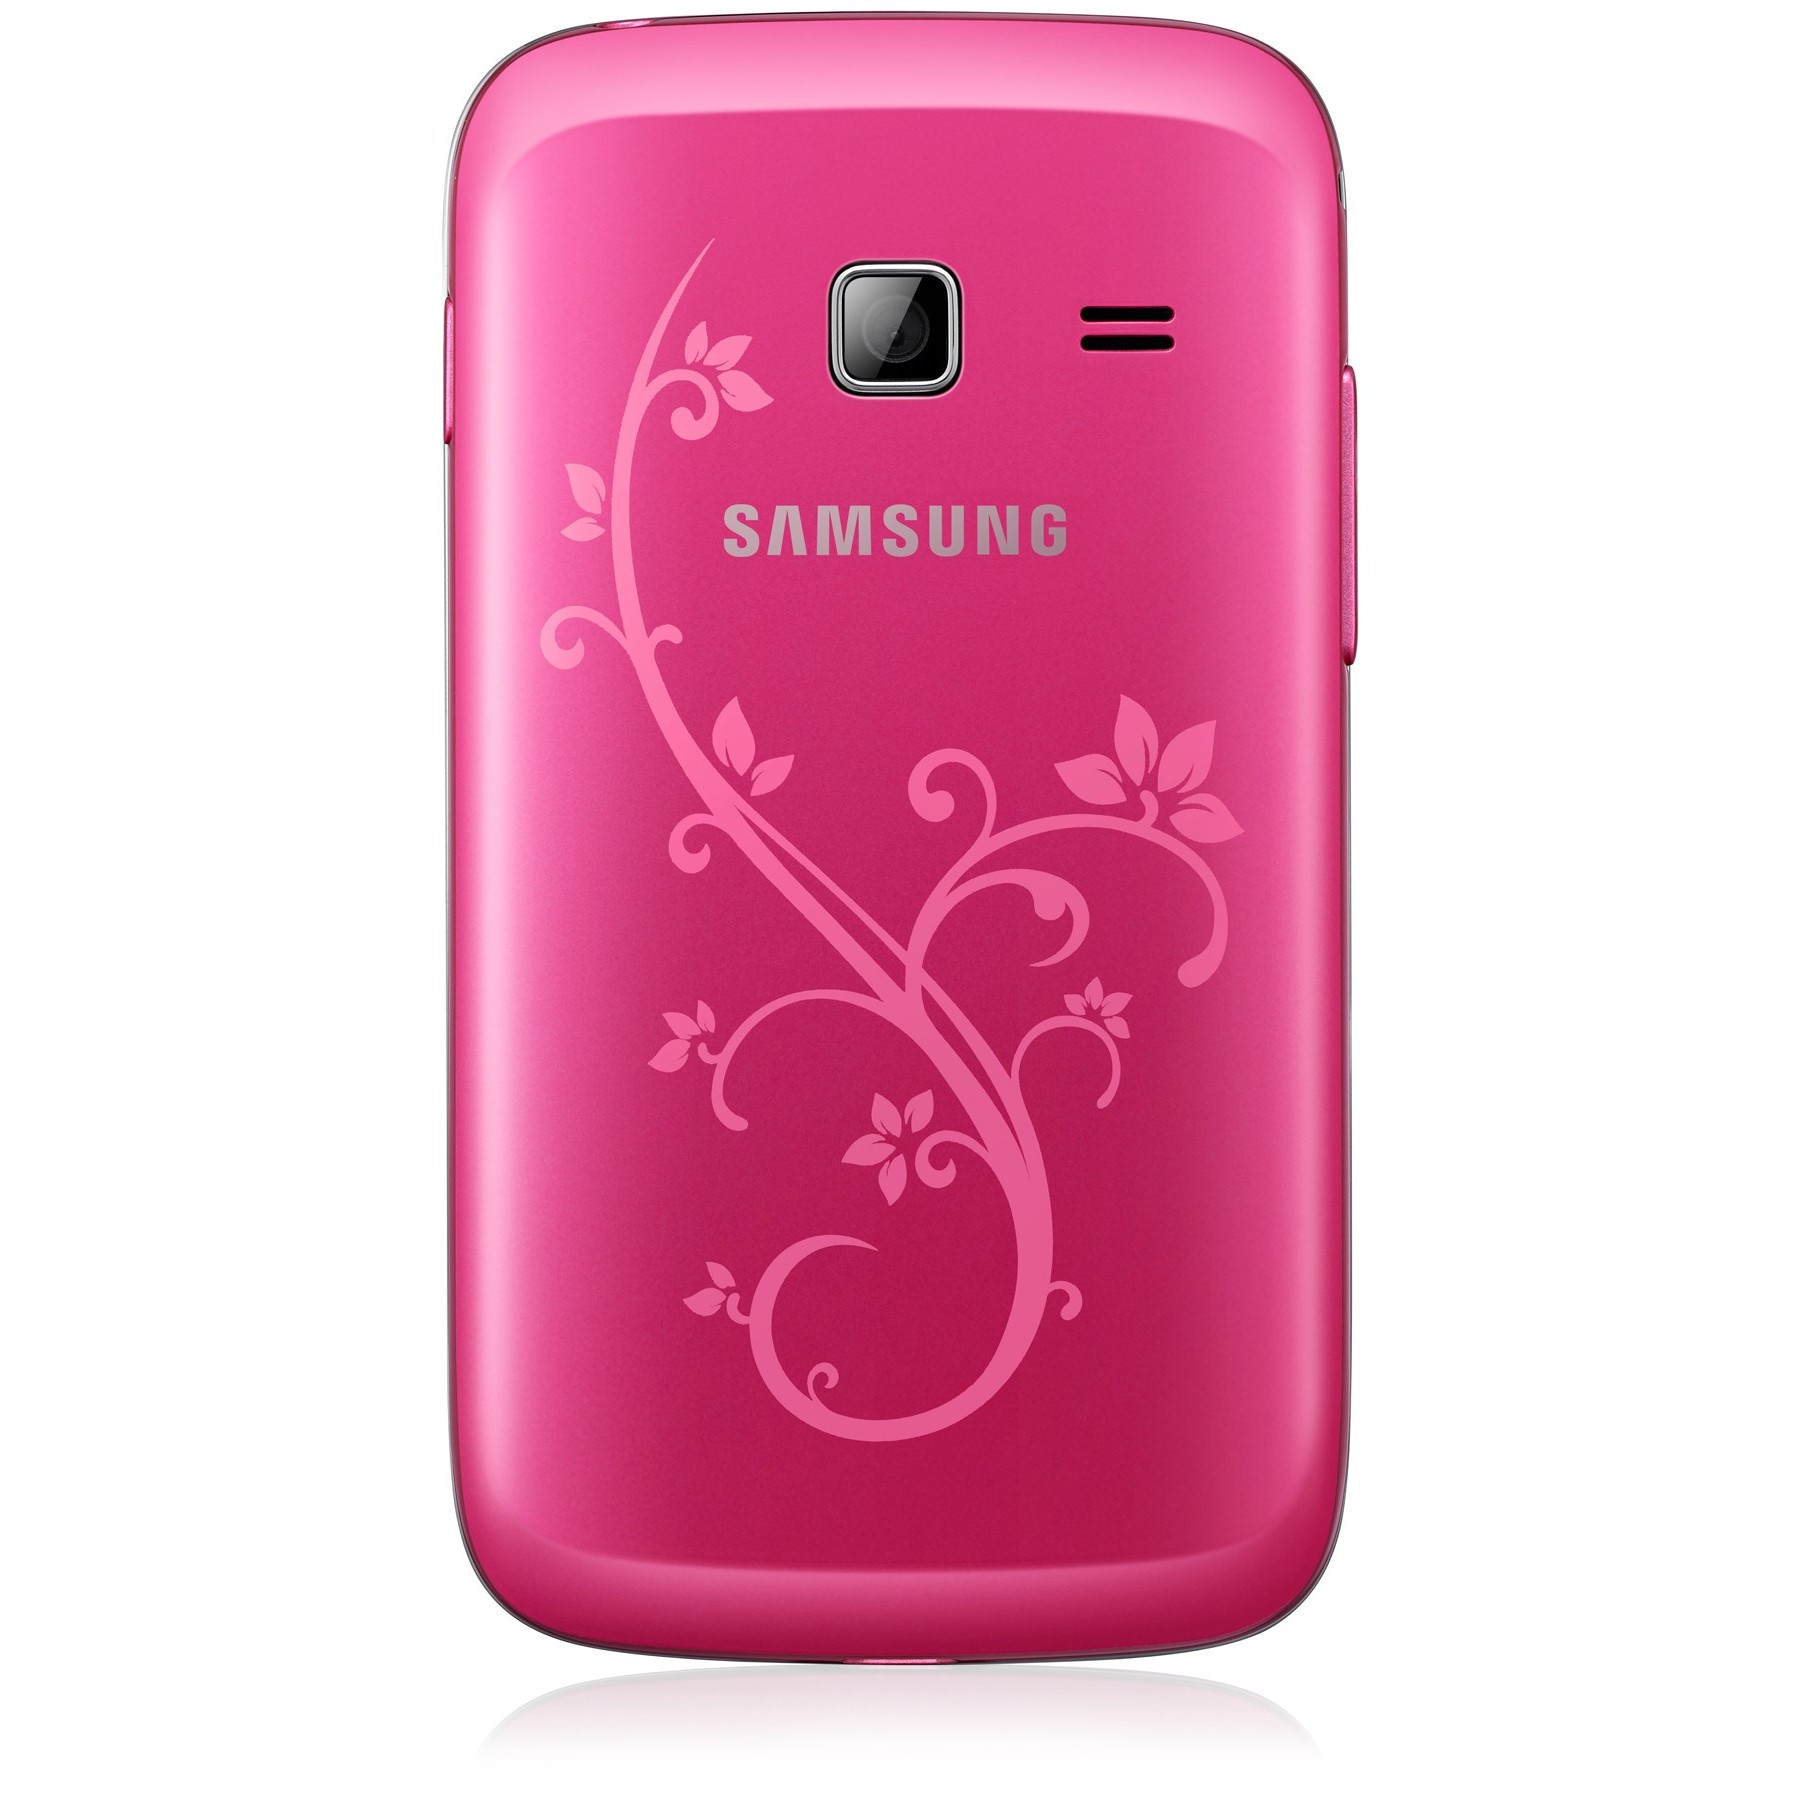 Samsung купить тула. Samsung Galaxy y Duos gt-s6102. Samsung gt s6102 la fleur Duos. Samsung la fleur gt 6102. Samsung s6102 Galaxy y Duos Pink.